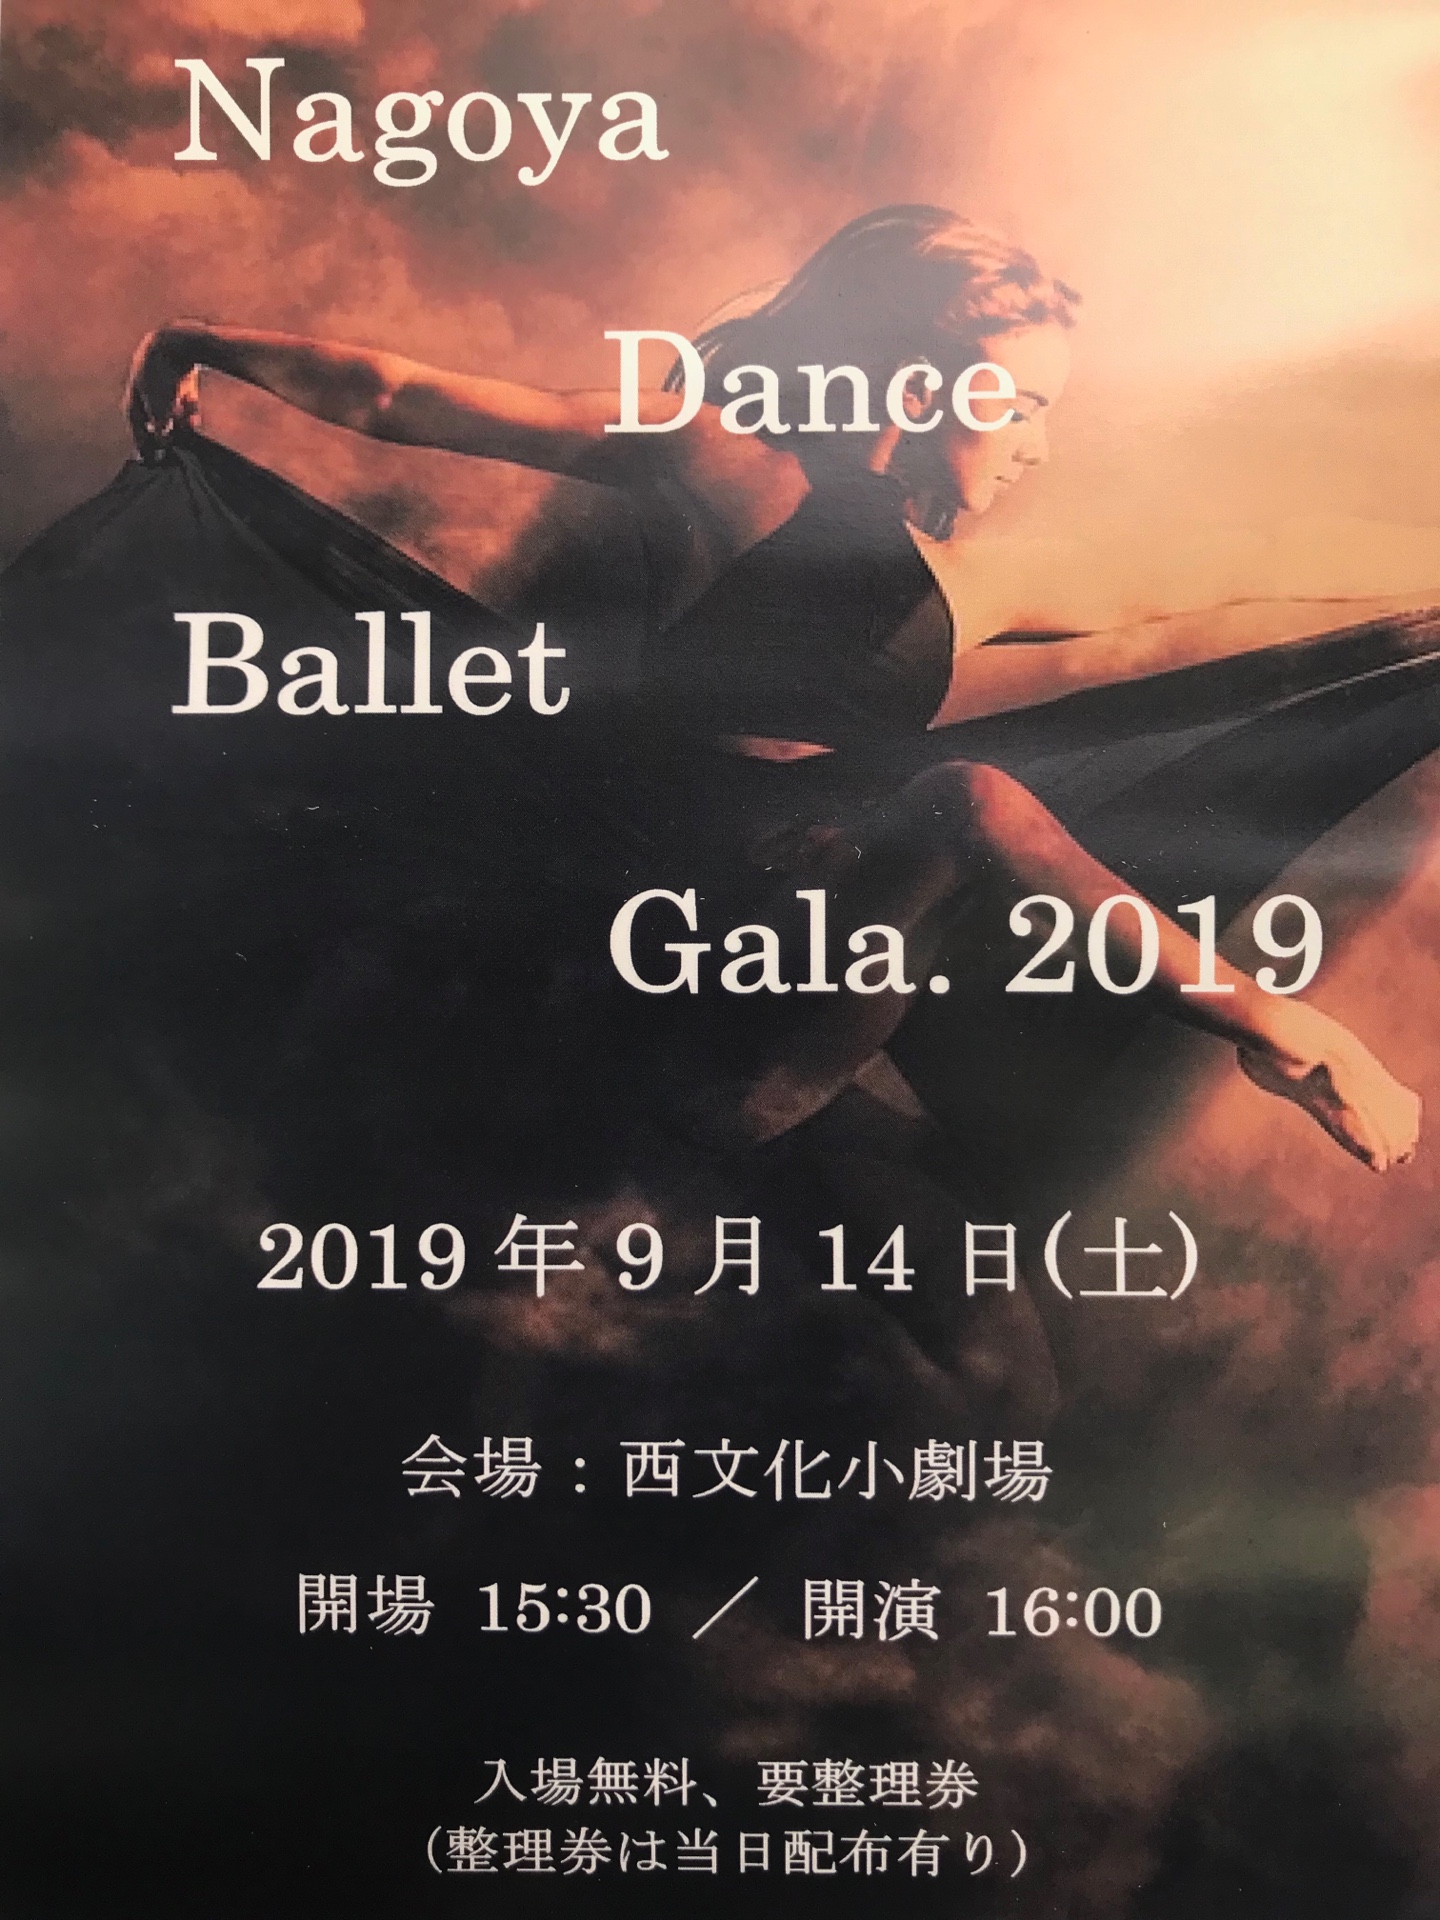 有名バレエダンサーが出演する「Nagoya Dance Ballet  gala」に注目